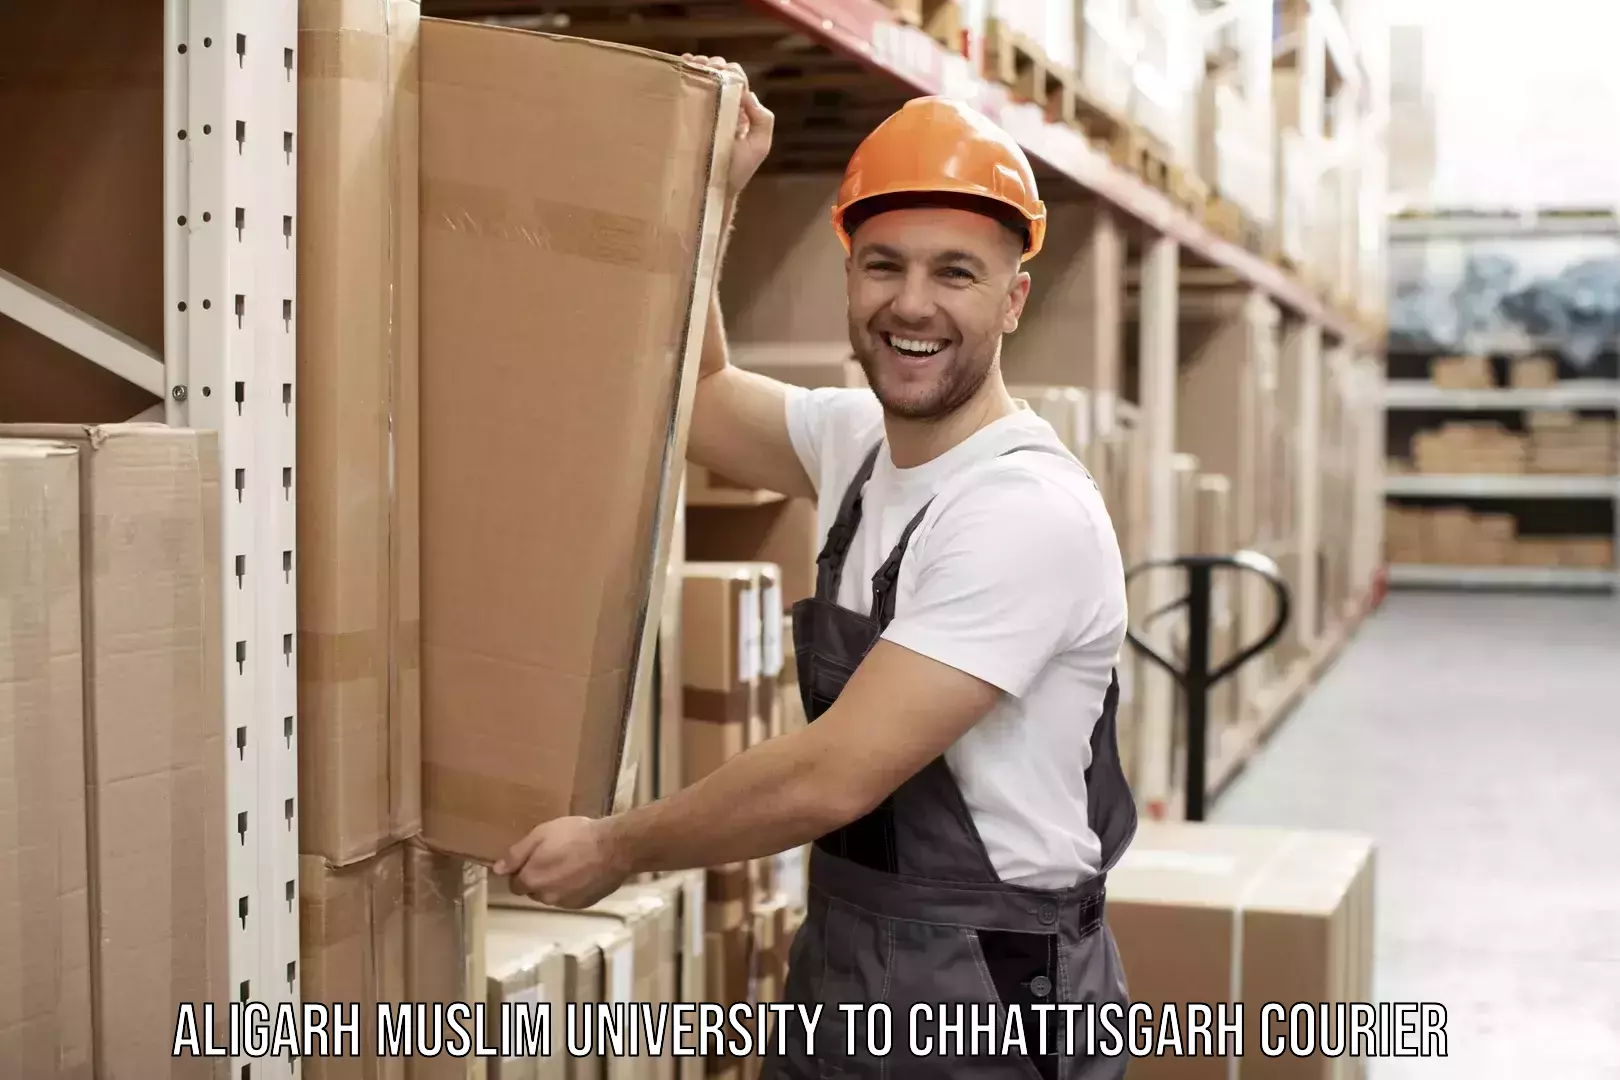 Nationwide furniture movers Aligarh Muslim University to Chhattisgarh